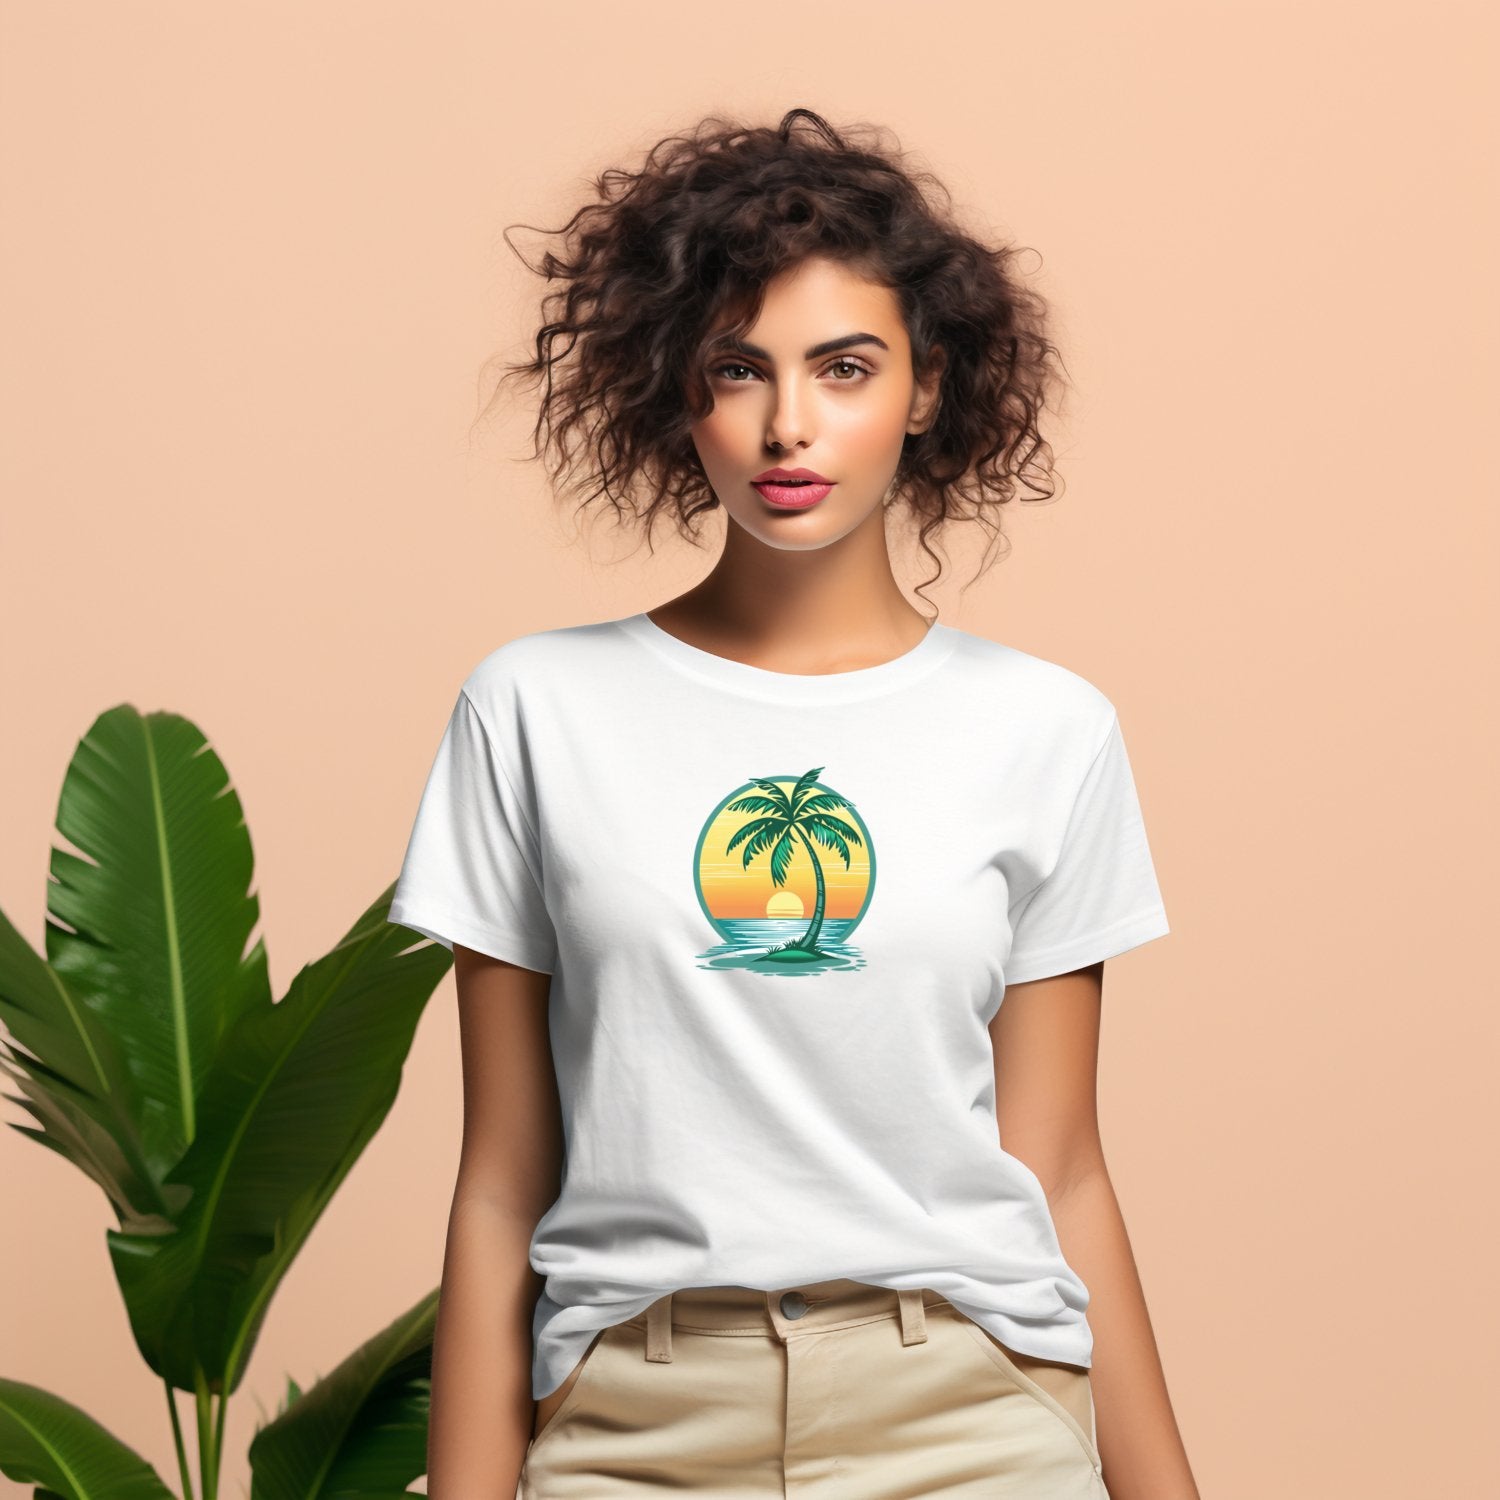 Jauna moteris dėvinti šviesius Moteriški marškinėliai "Under a Palm" su palmės ir saulėlydžio atvaizdu, Designedbyme.lt produktas, puikus pasirinkimas paplūdymiui ar laisvalaikiui mieste, Moteriški marškinėliai, Visi produktai, ☀️ Vasaros kolekcija ☀️